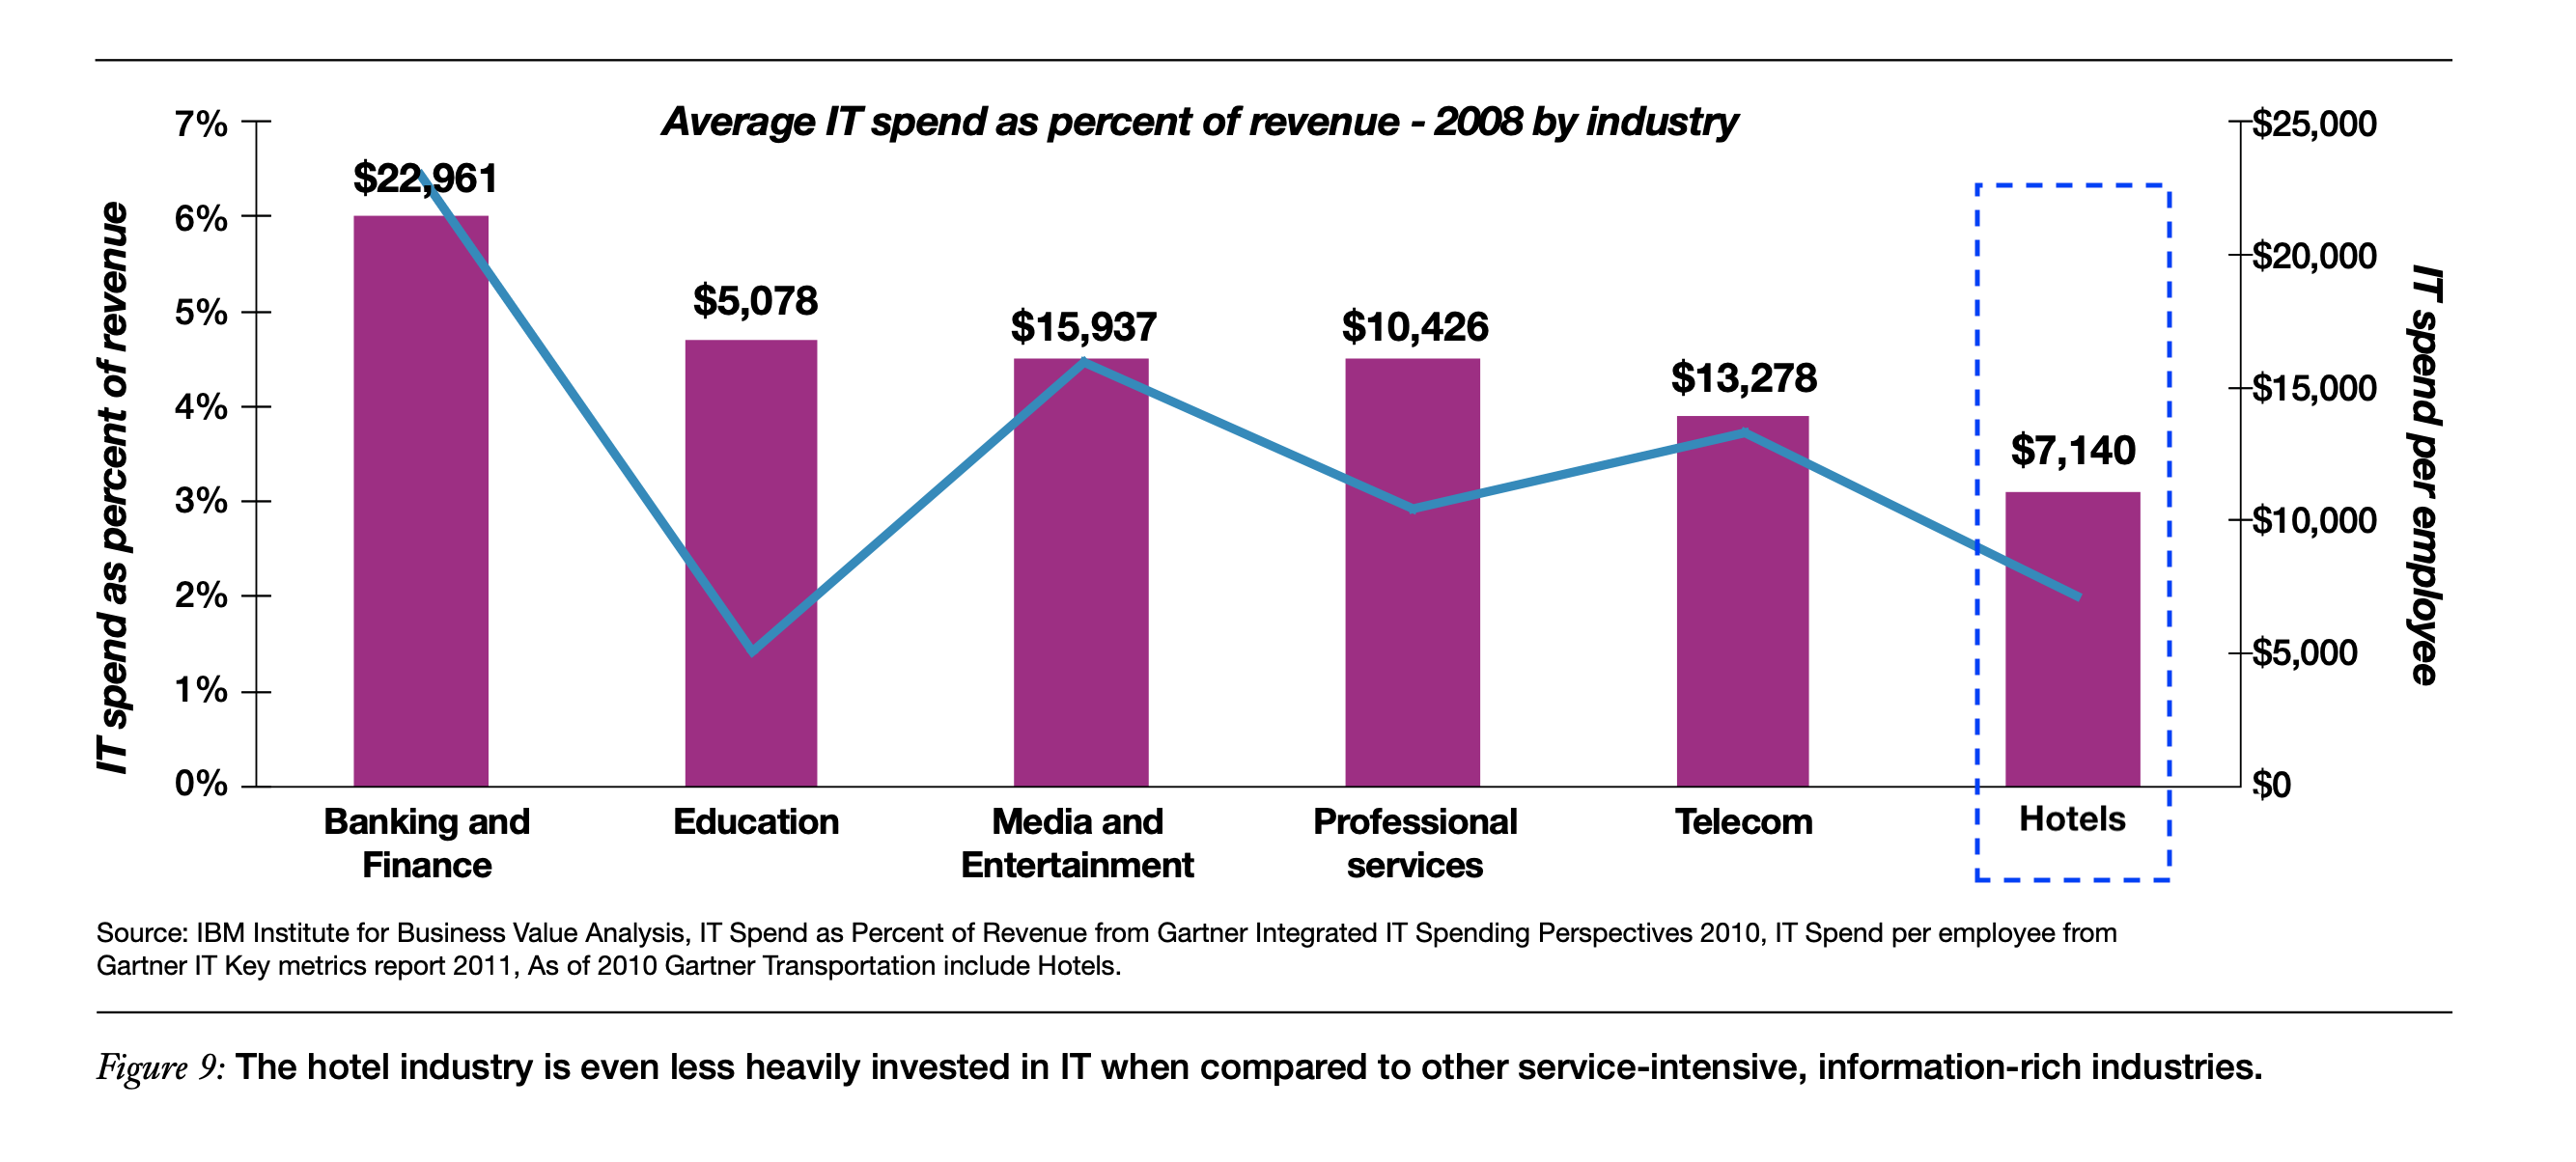 متوسط الإنفاق على تكنولوجيا المعلومات لكل موظف وكنسبة مئوية من الإيرادات لمختلف الصناعات ، مع أقل إنفاق في صناعة الفنادق